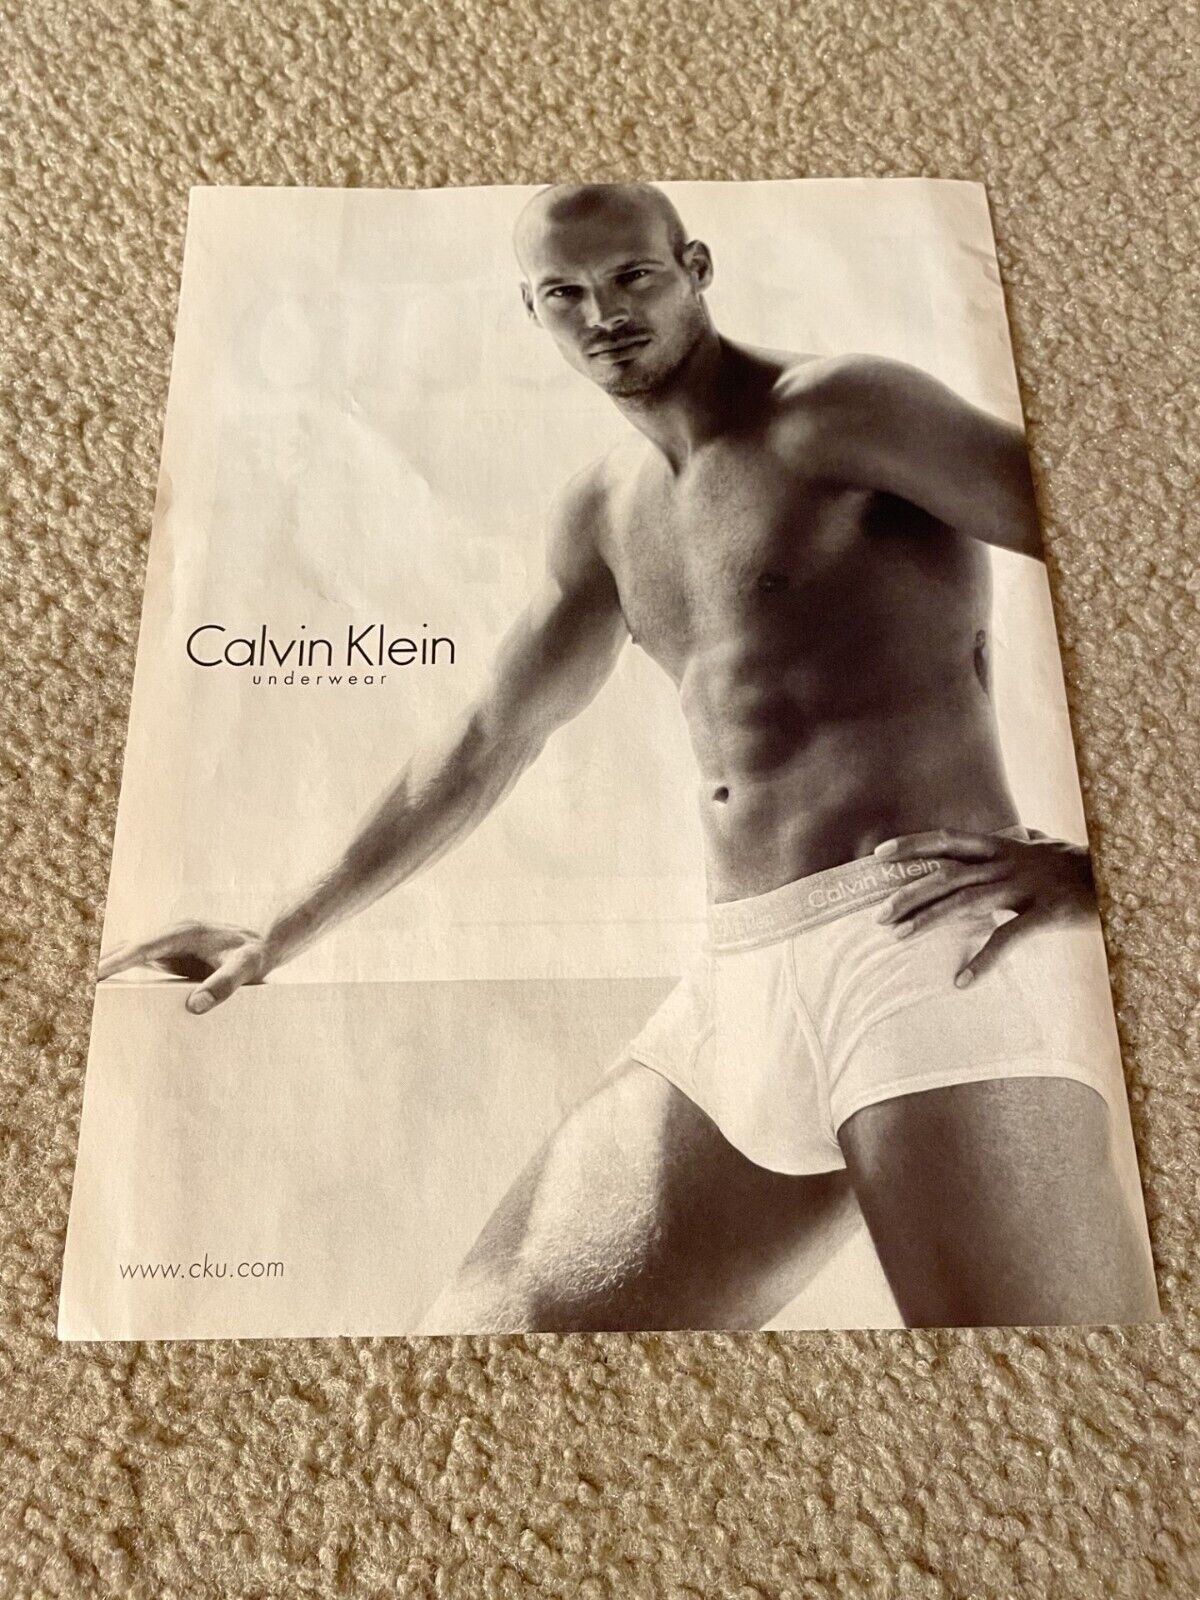 Vintage 2006 CALVIN KLEIN UNDERWEAR Poster Print Ad MALE MODEL SHIRTLESS